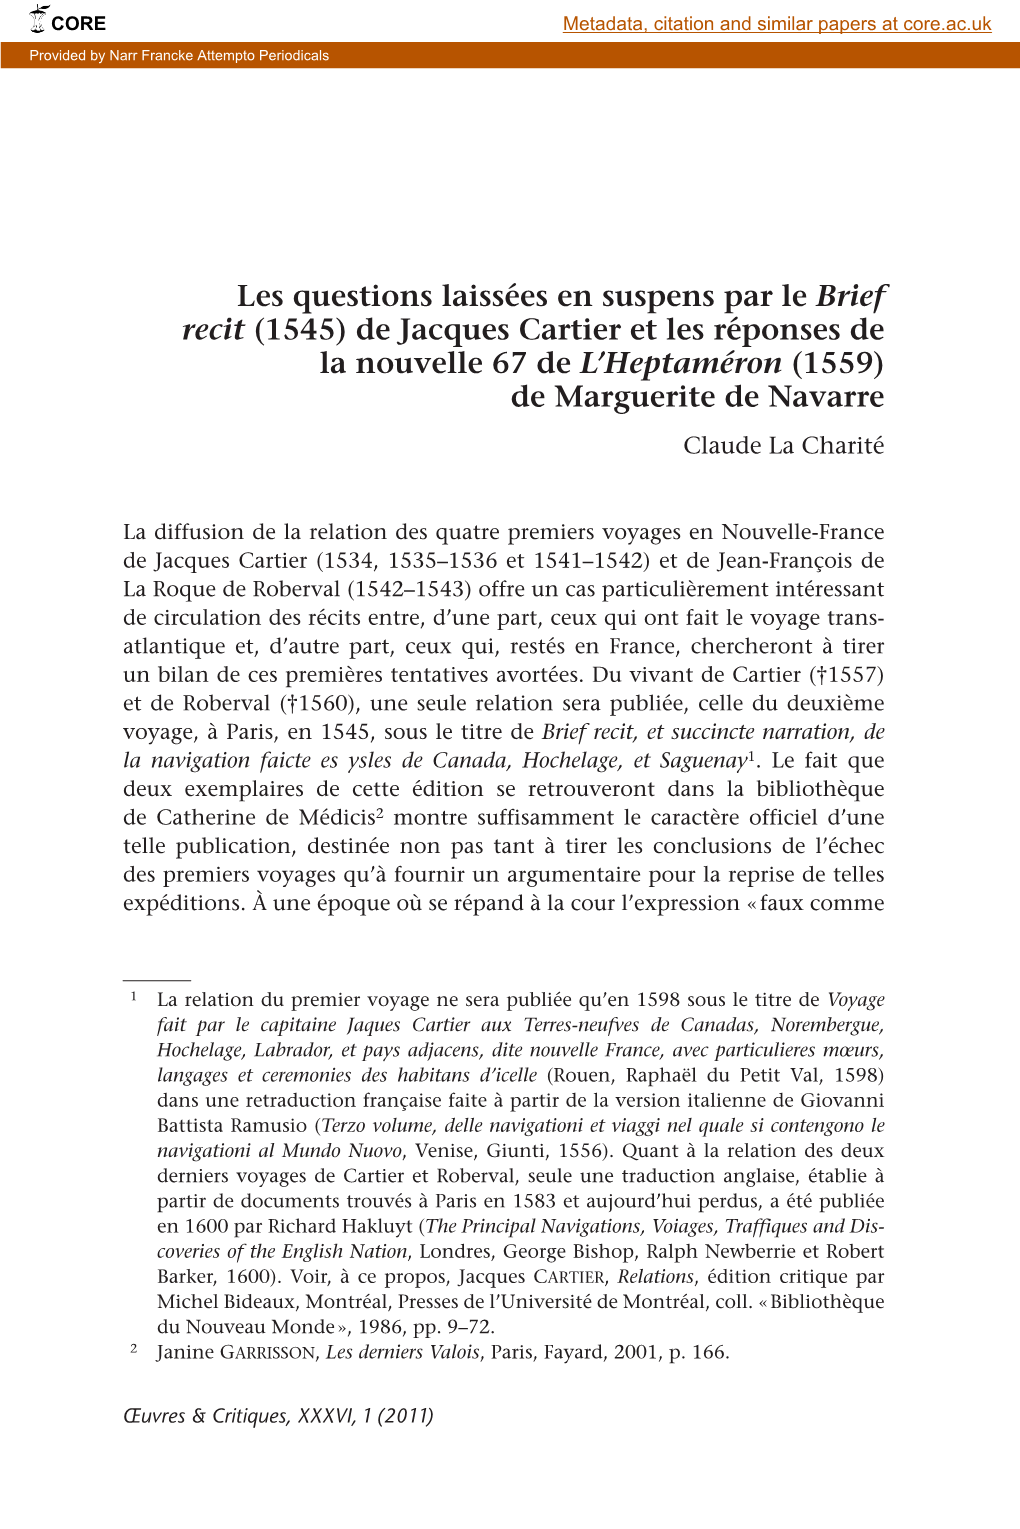 (1545) De Jacques Cartier Et Les Réponses De La Nouvelle 67 De L’Heptaméron (1559) De Marguerite De Navarre Claude La Charité